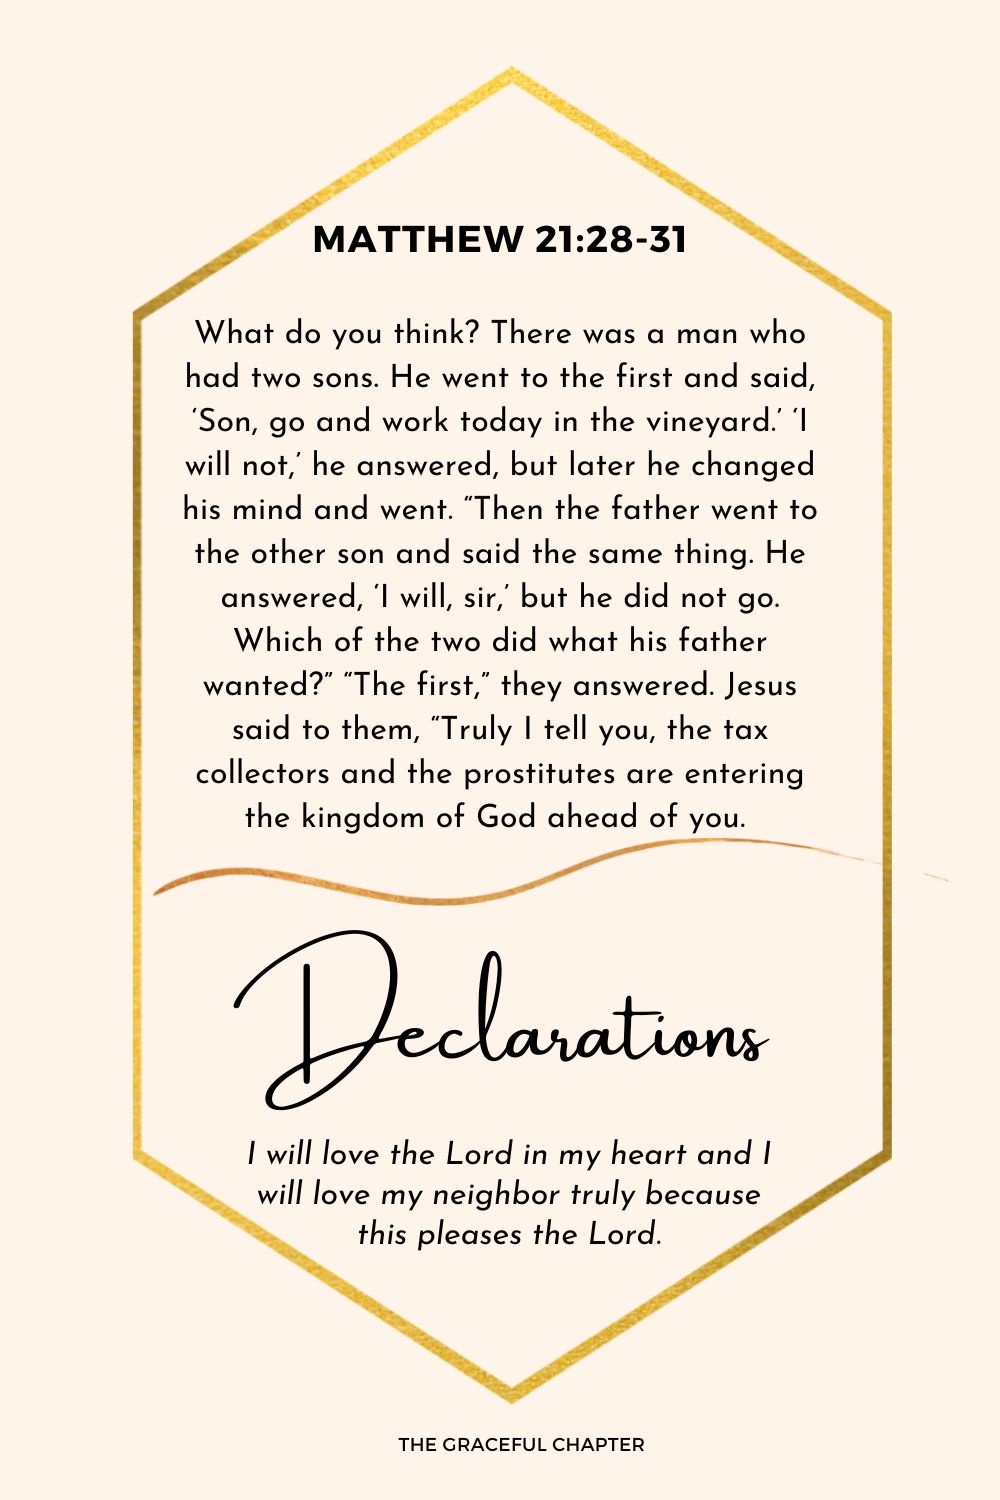 Declaration - Matthew 21:28-31